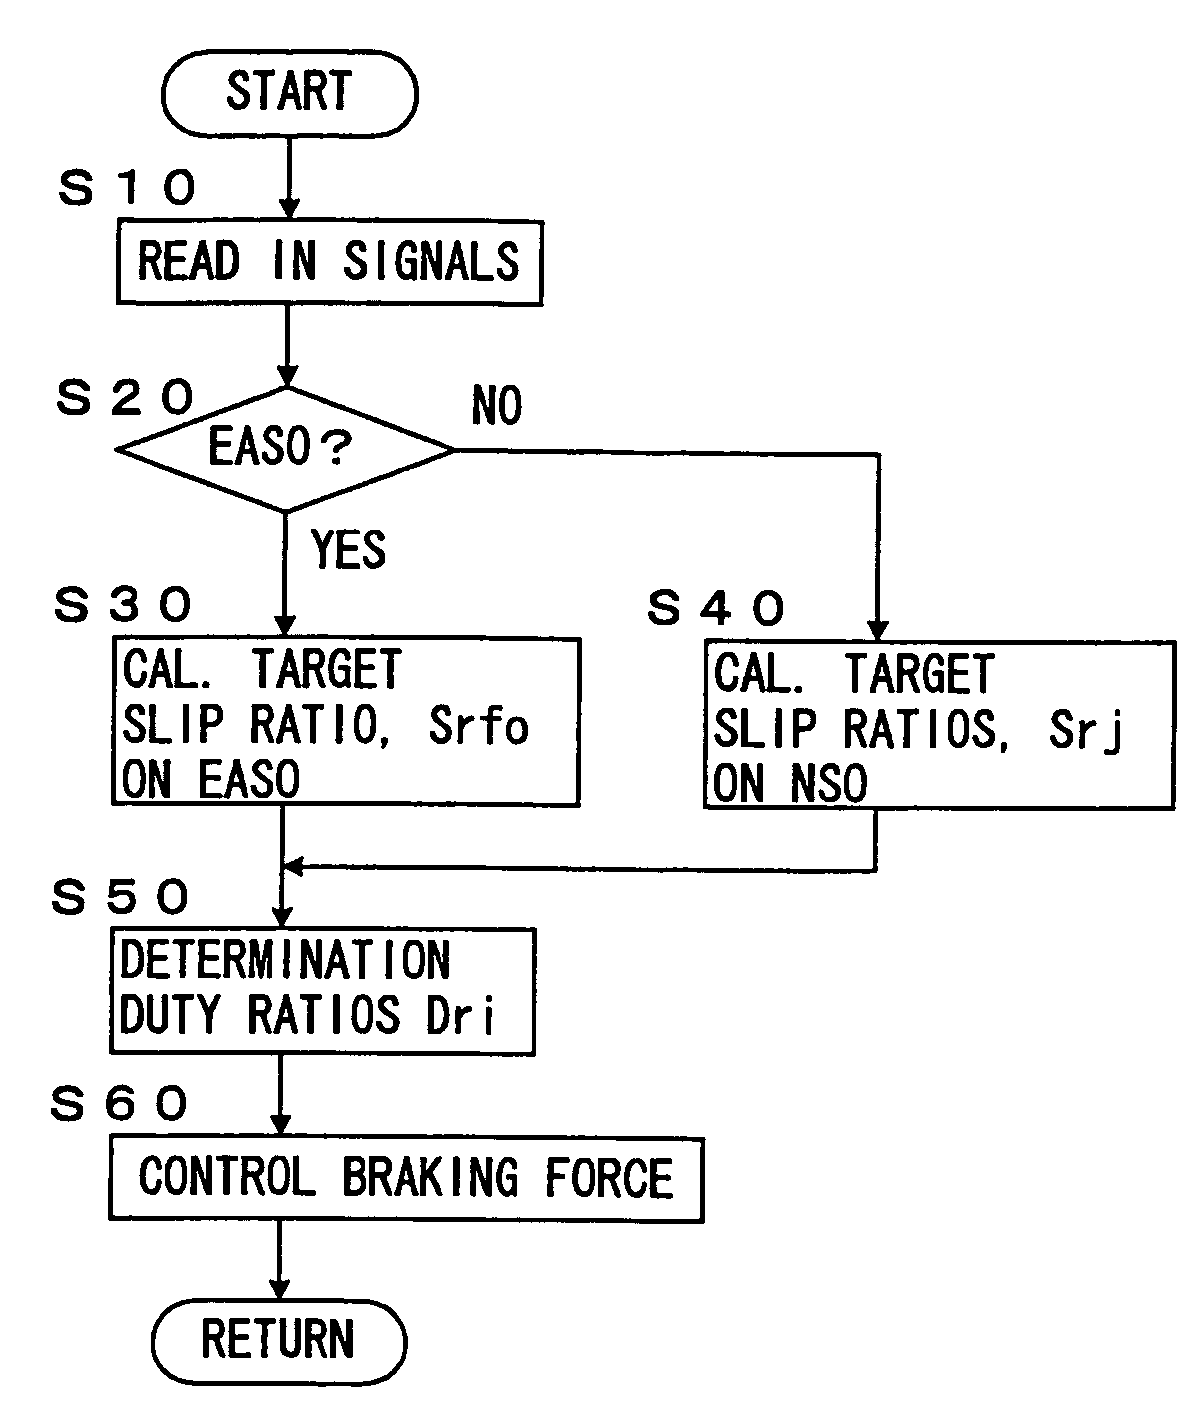 Vehicle behavior control device